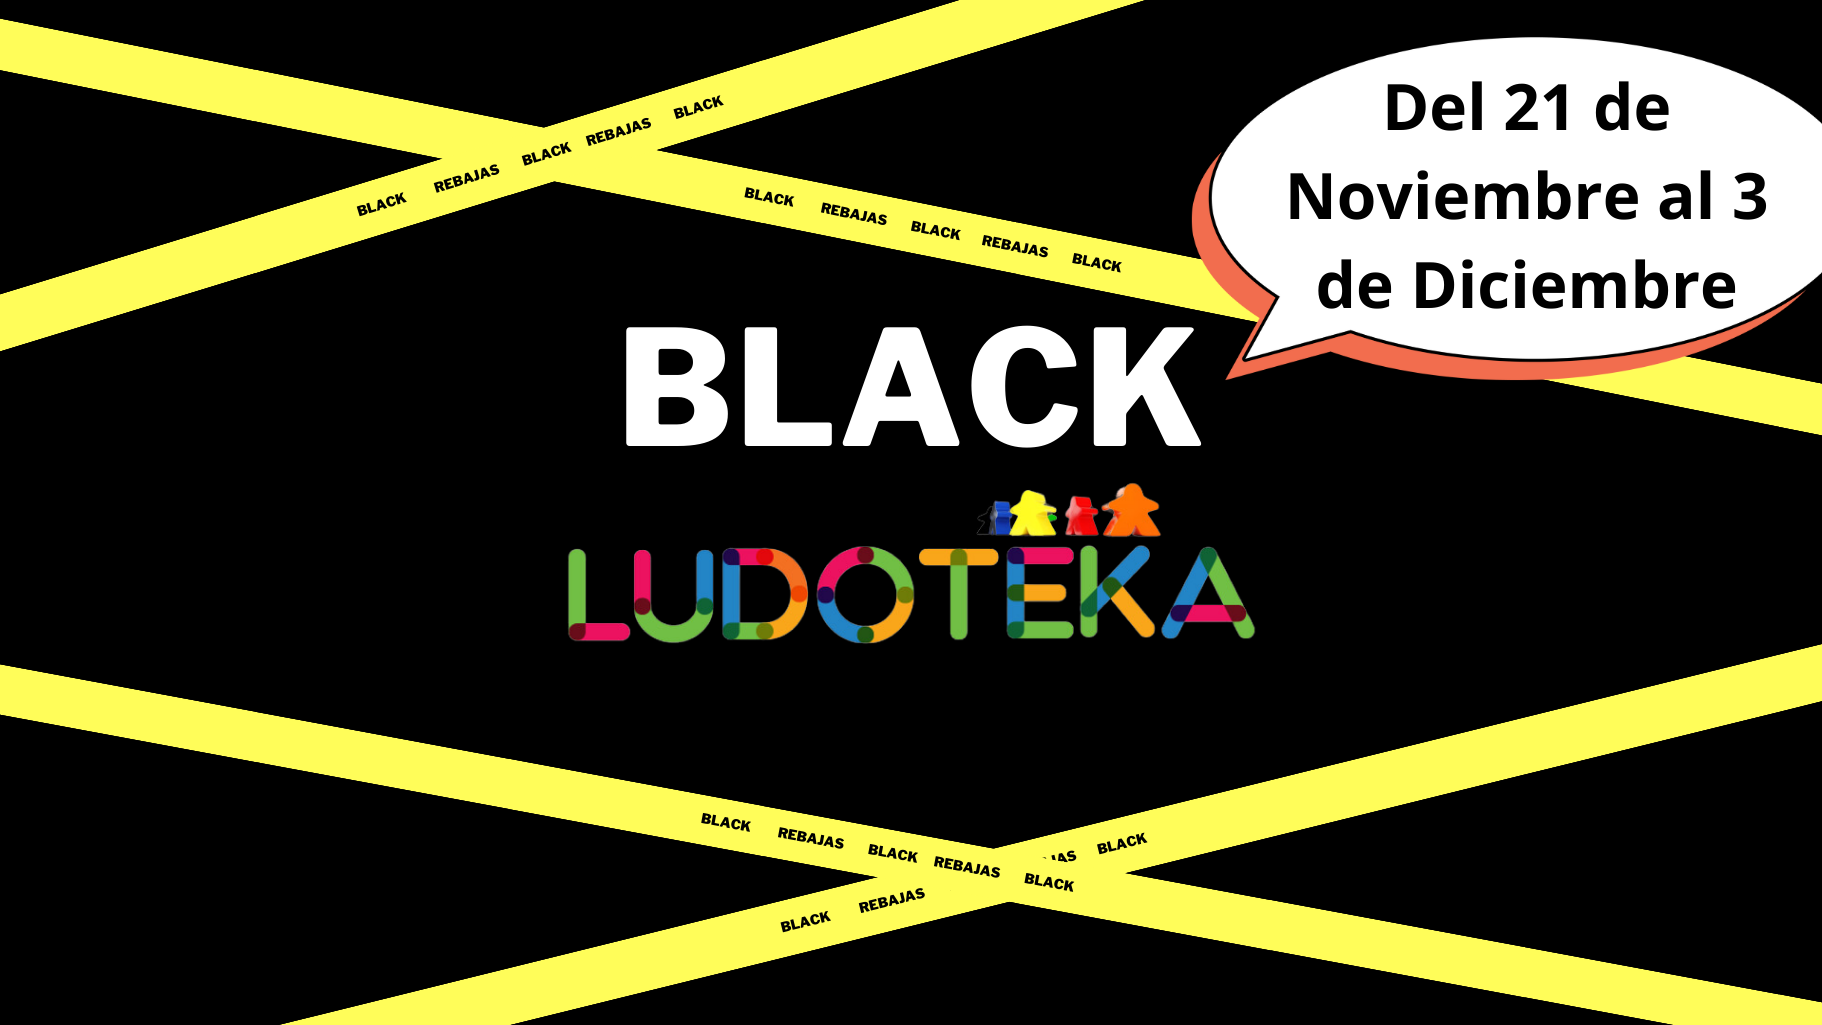 Black Ludoteka